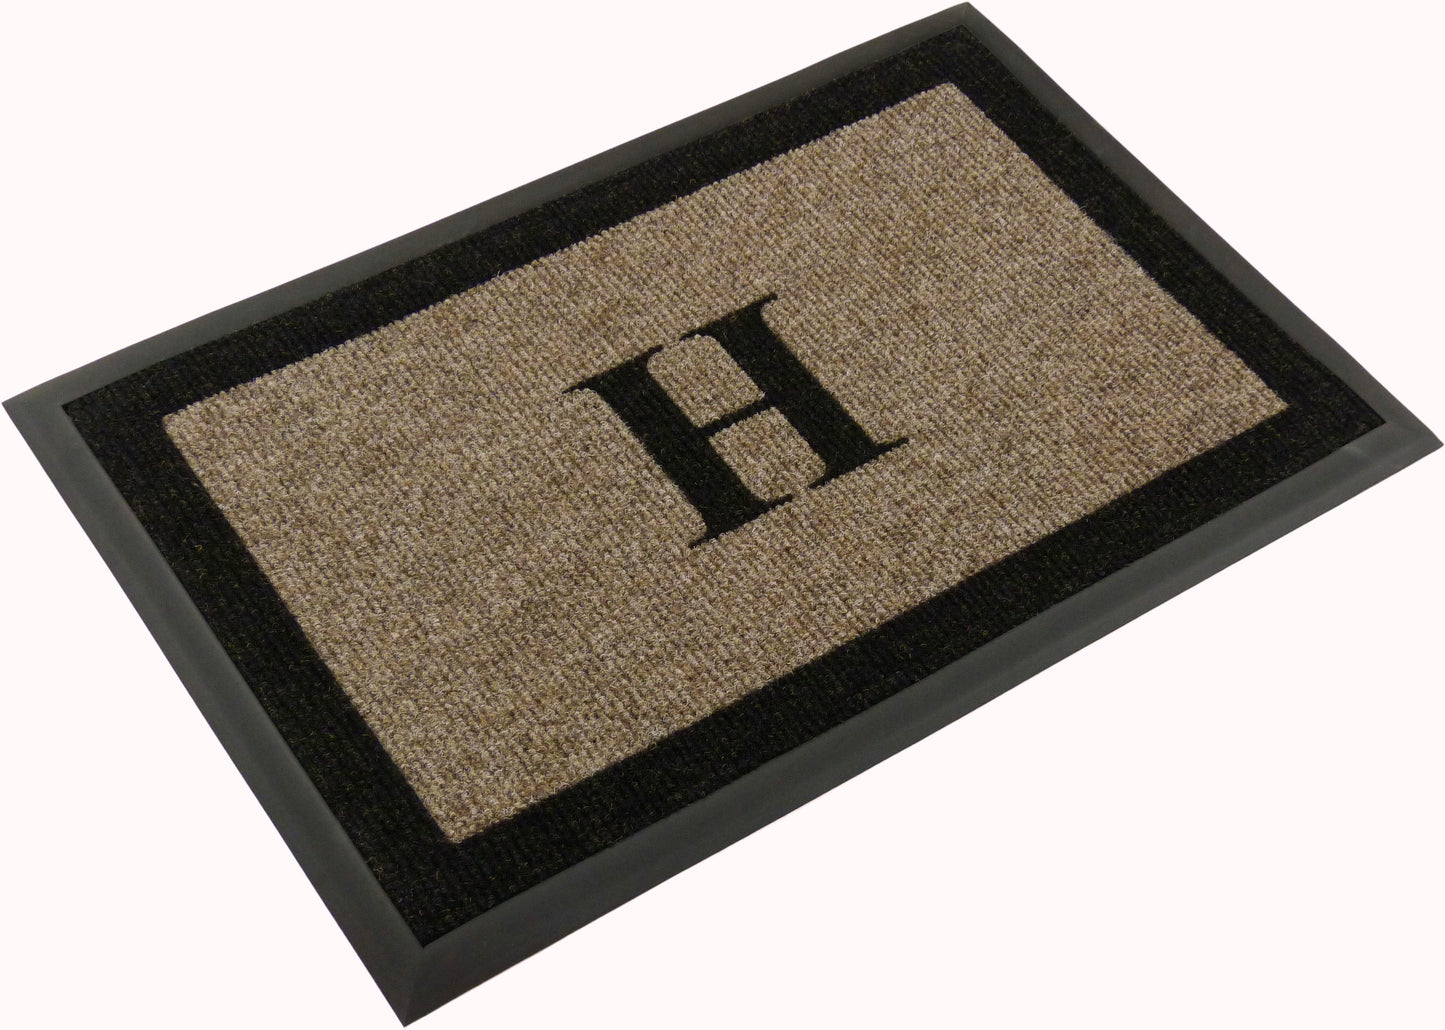 Samson Monogram "H" Door Mat